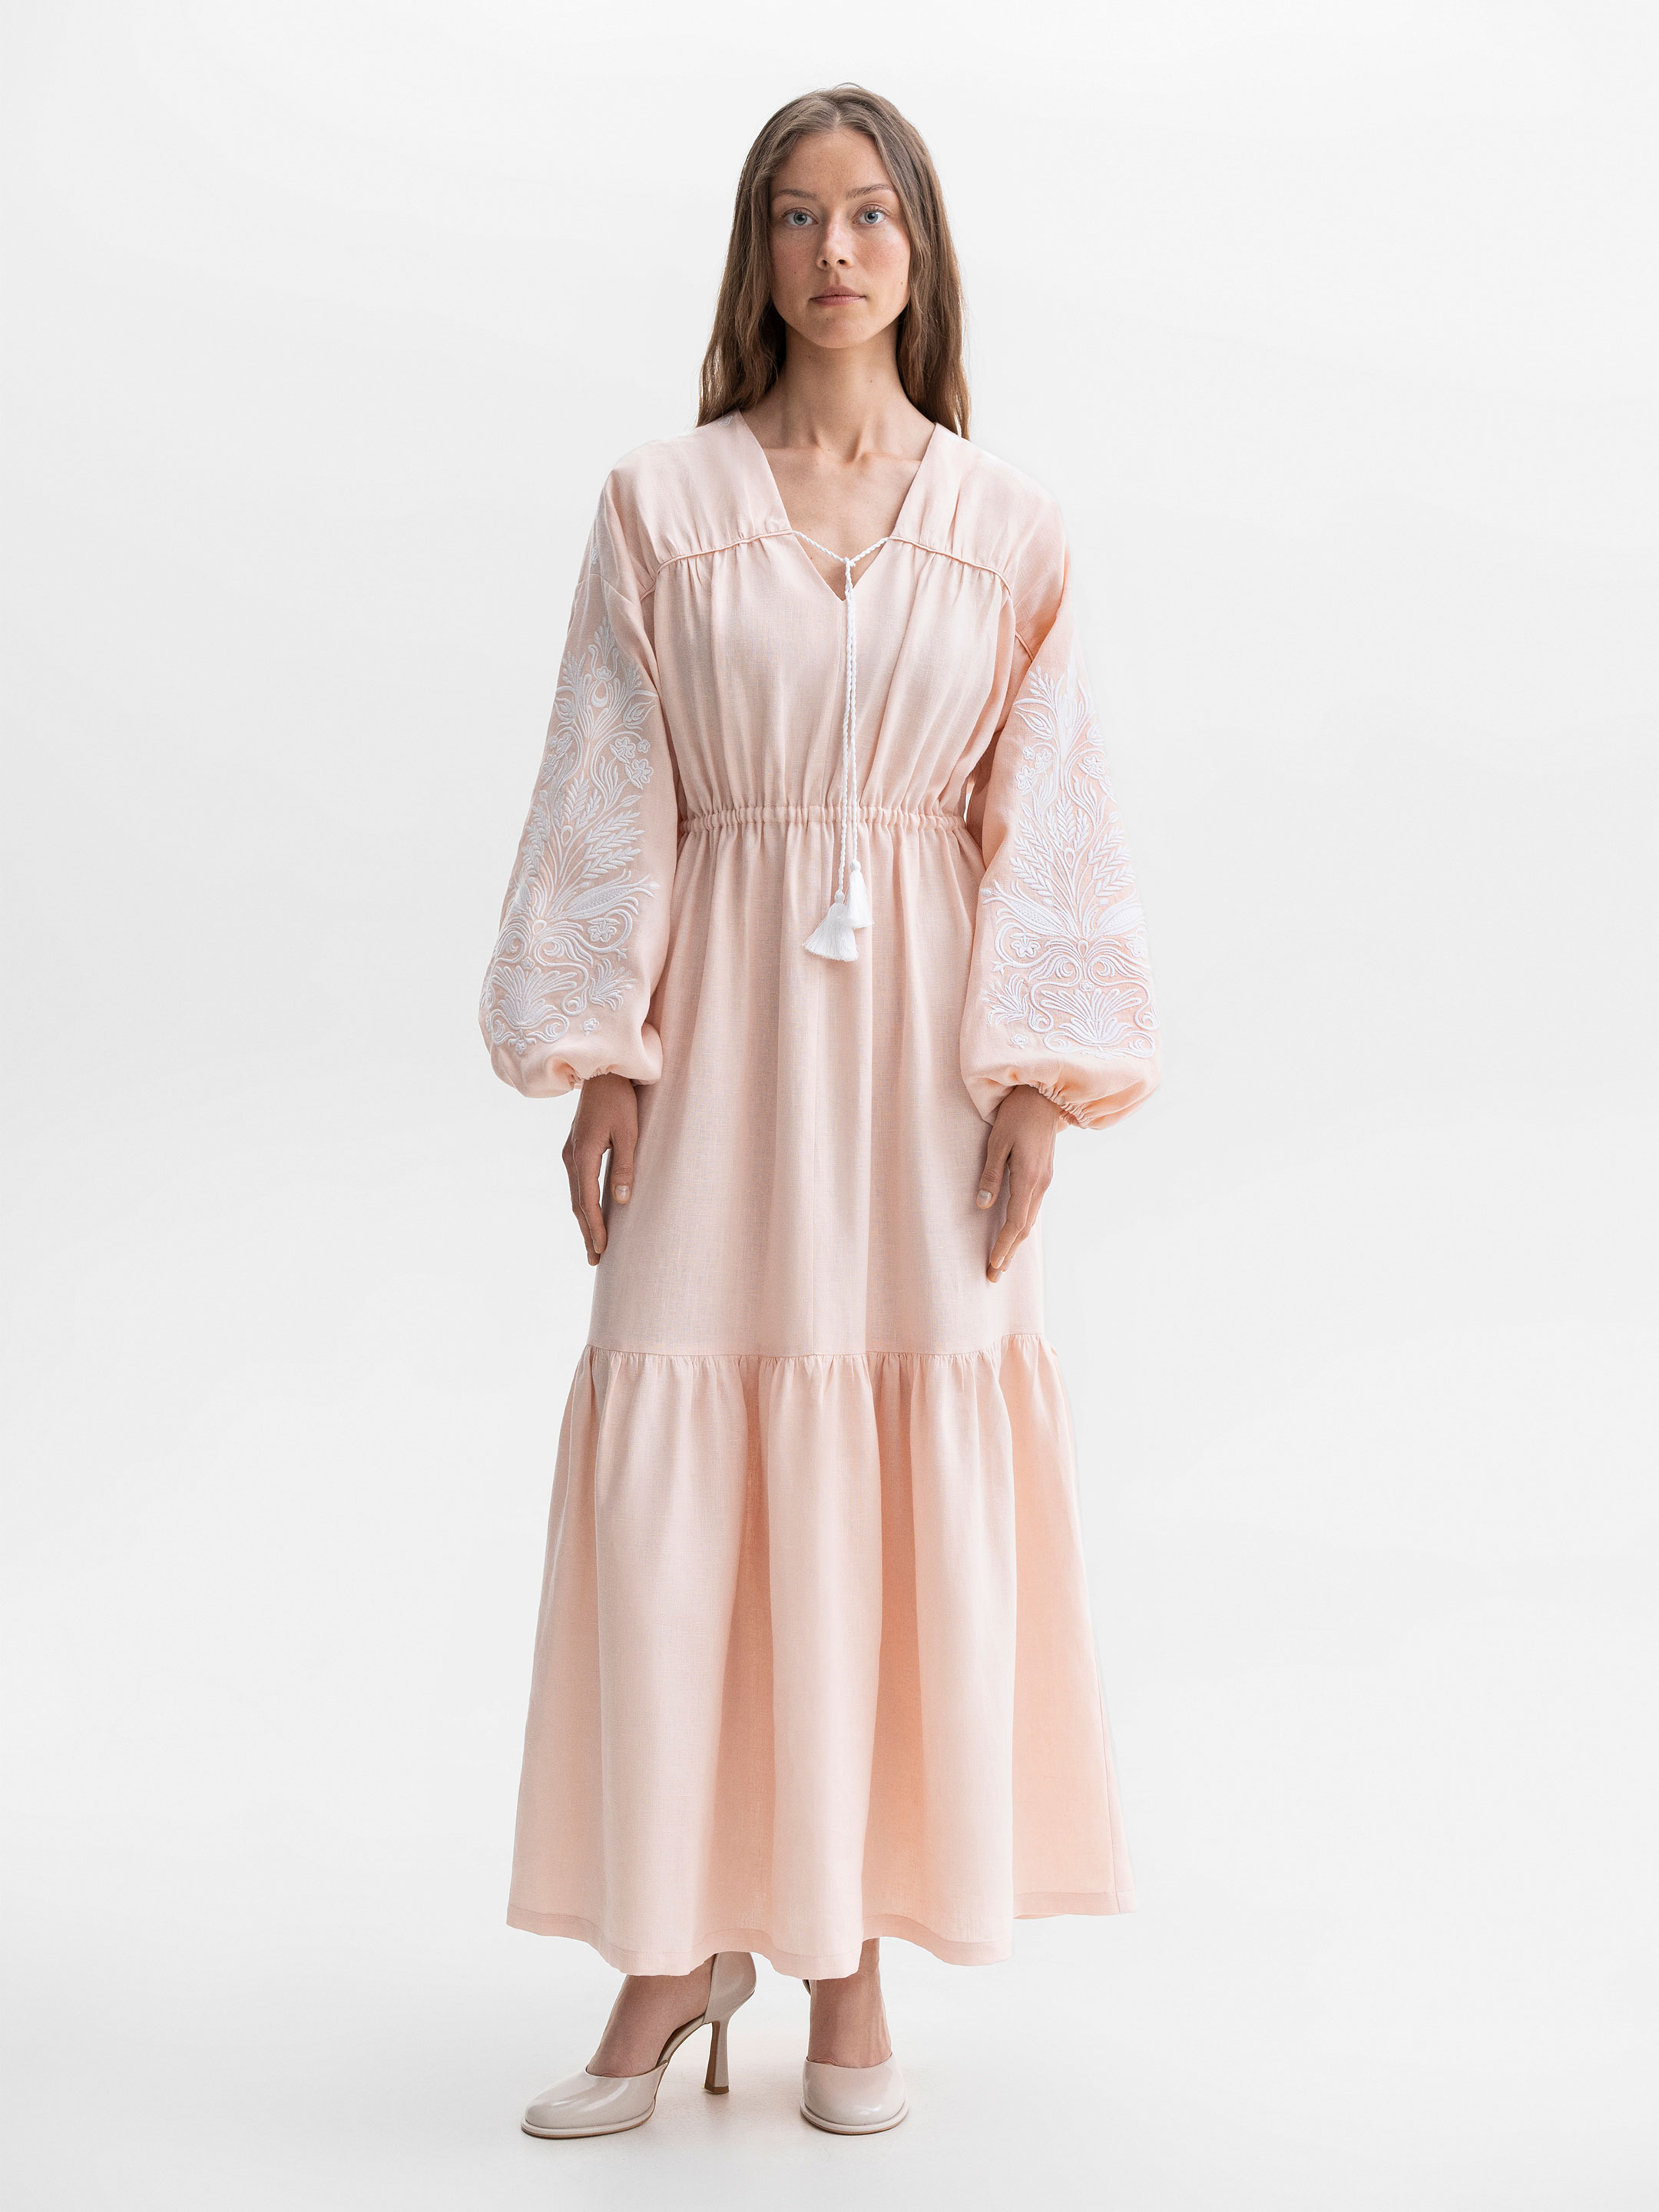 Вишита сукня міді персикового кольору із білою вишивкою "Камʼяна вишиванка" - фото 1